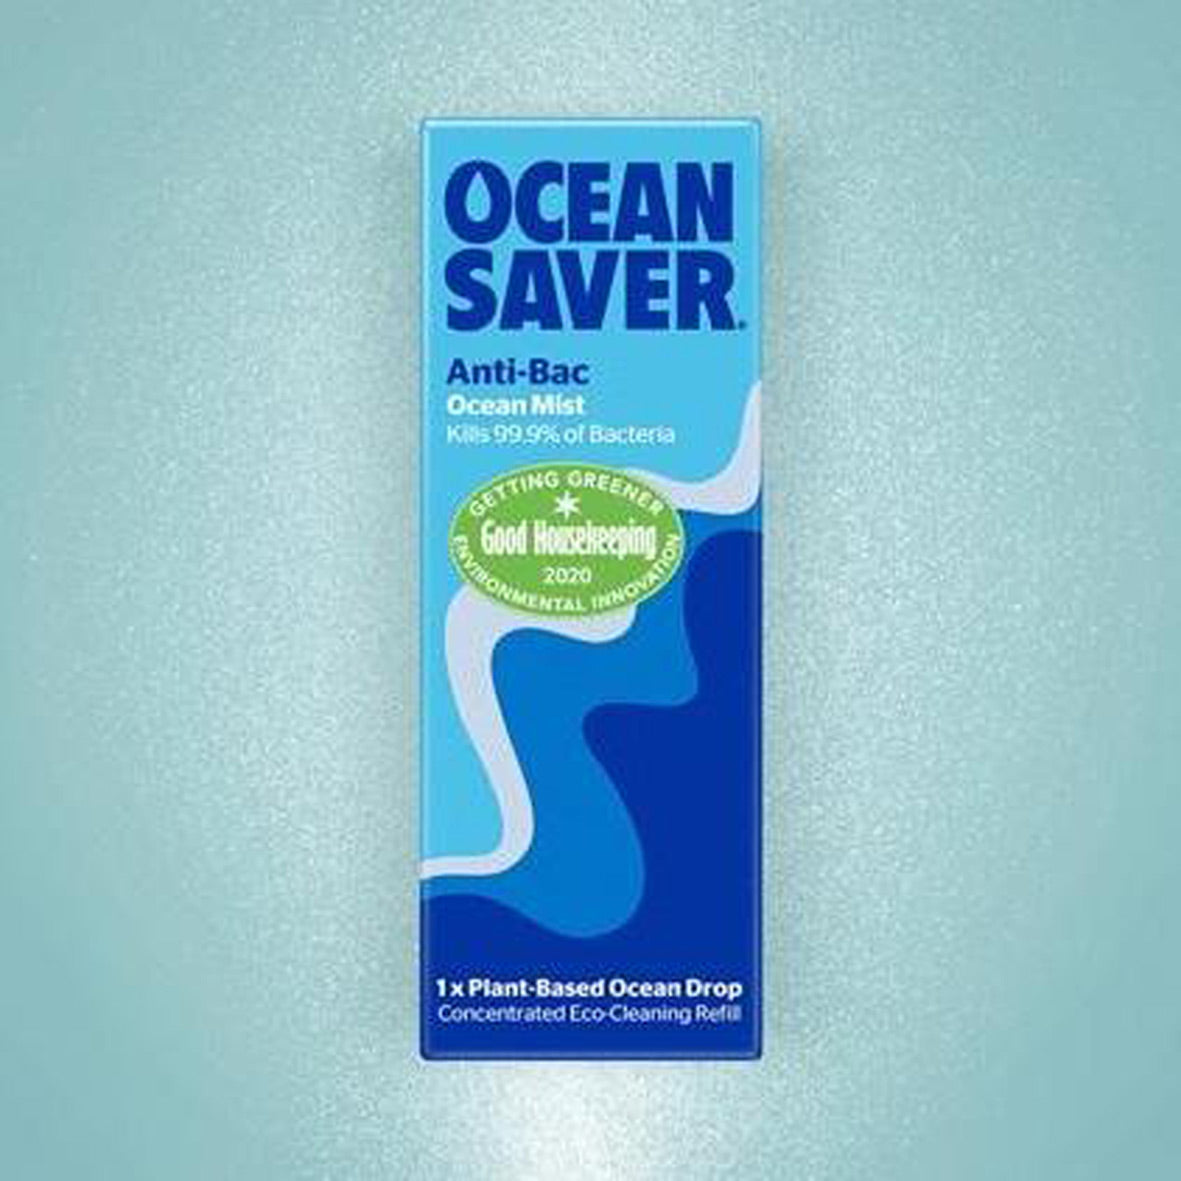 Ocean Saver Vegan Antibacterial Ocean Mist